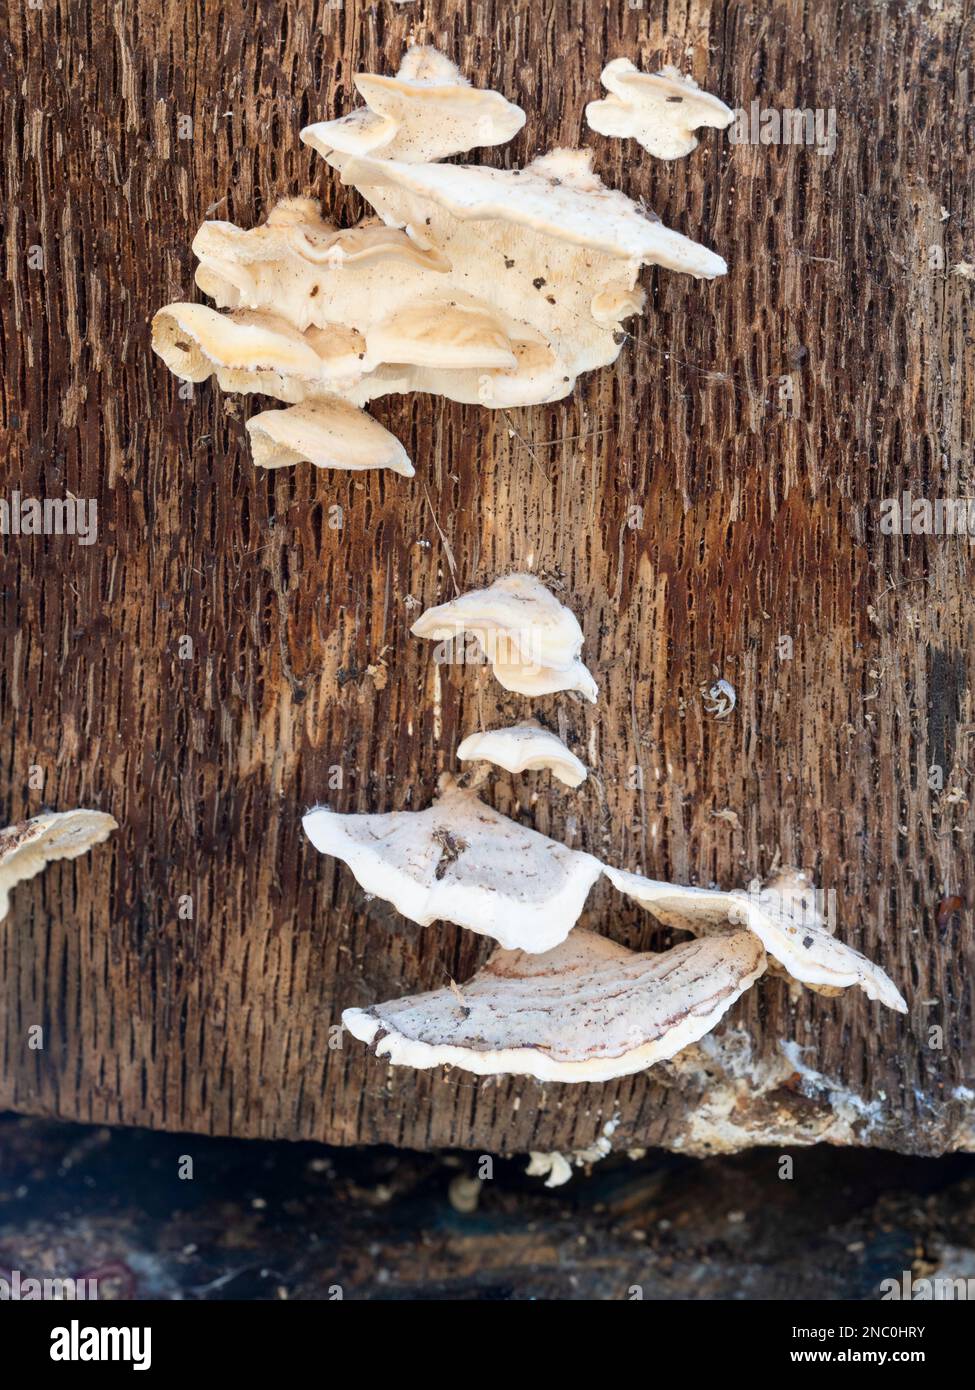 Partie supérieure du corps de fructification du champignon de la ferrure, Trametes hirsutus, qui pousse dans une bûche de chêne au Royaume-Uni Banque D'Images